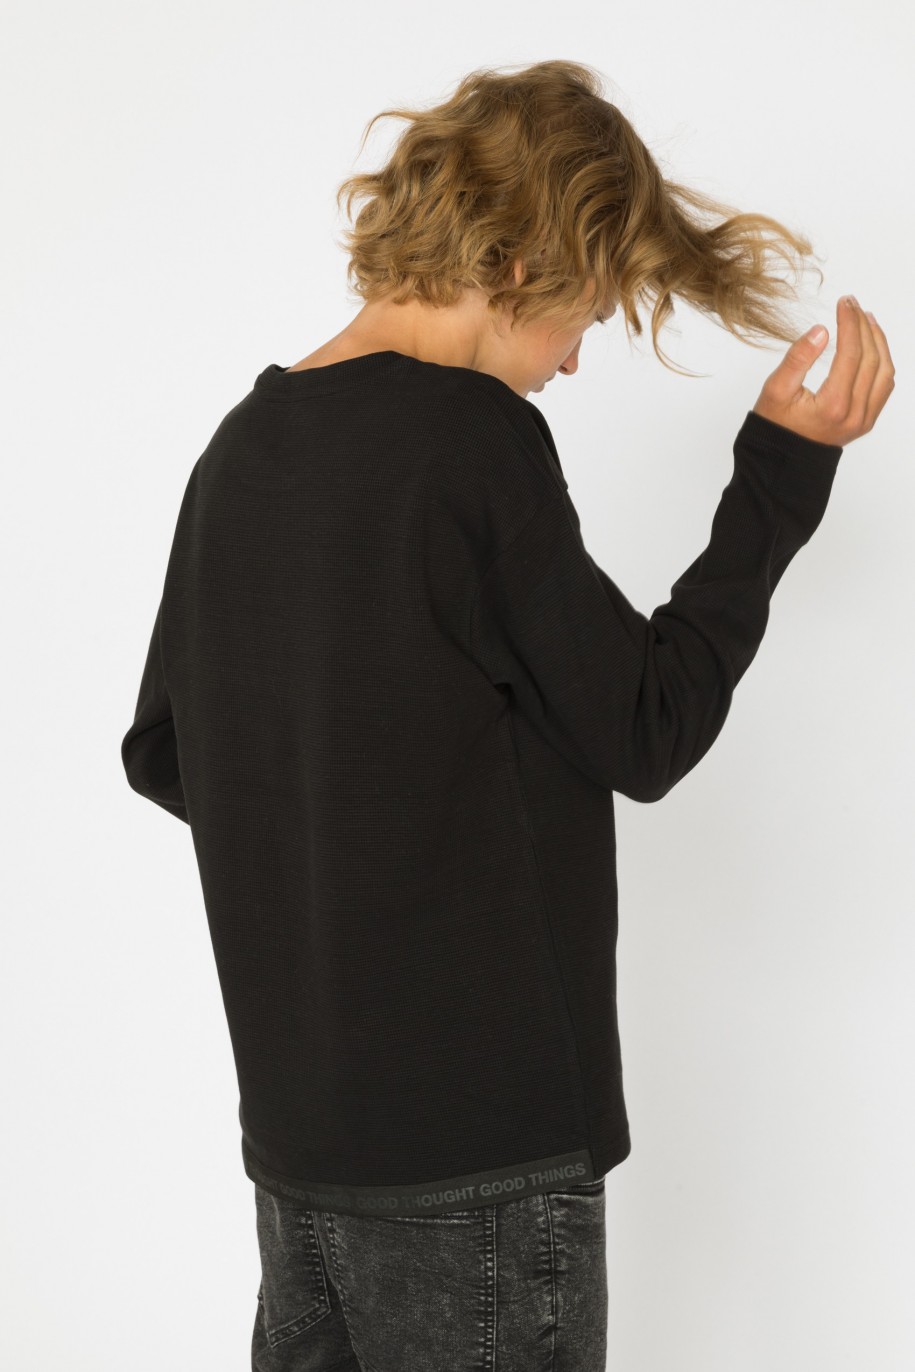 Czarny t-shirt z długim rękawem dla chłopaka - 30954